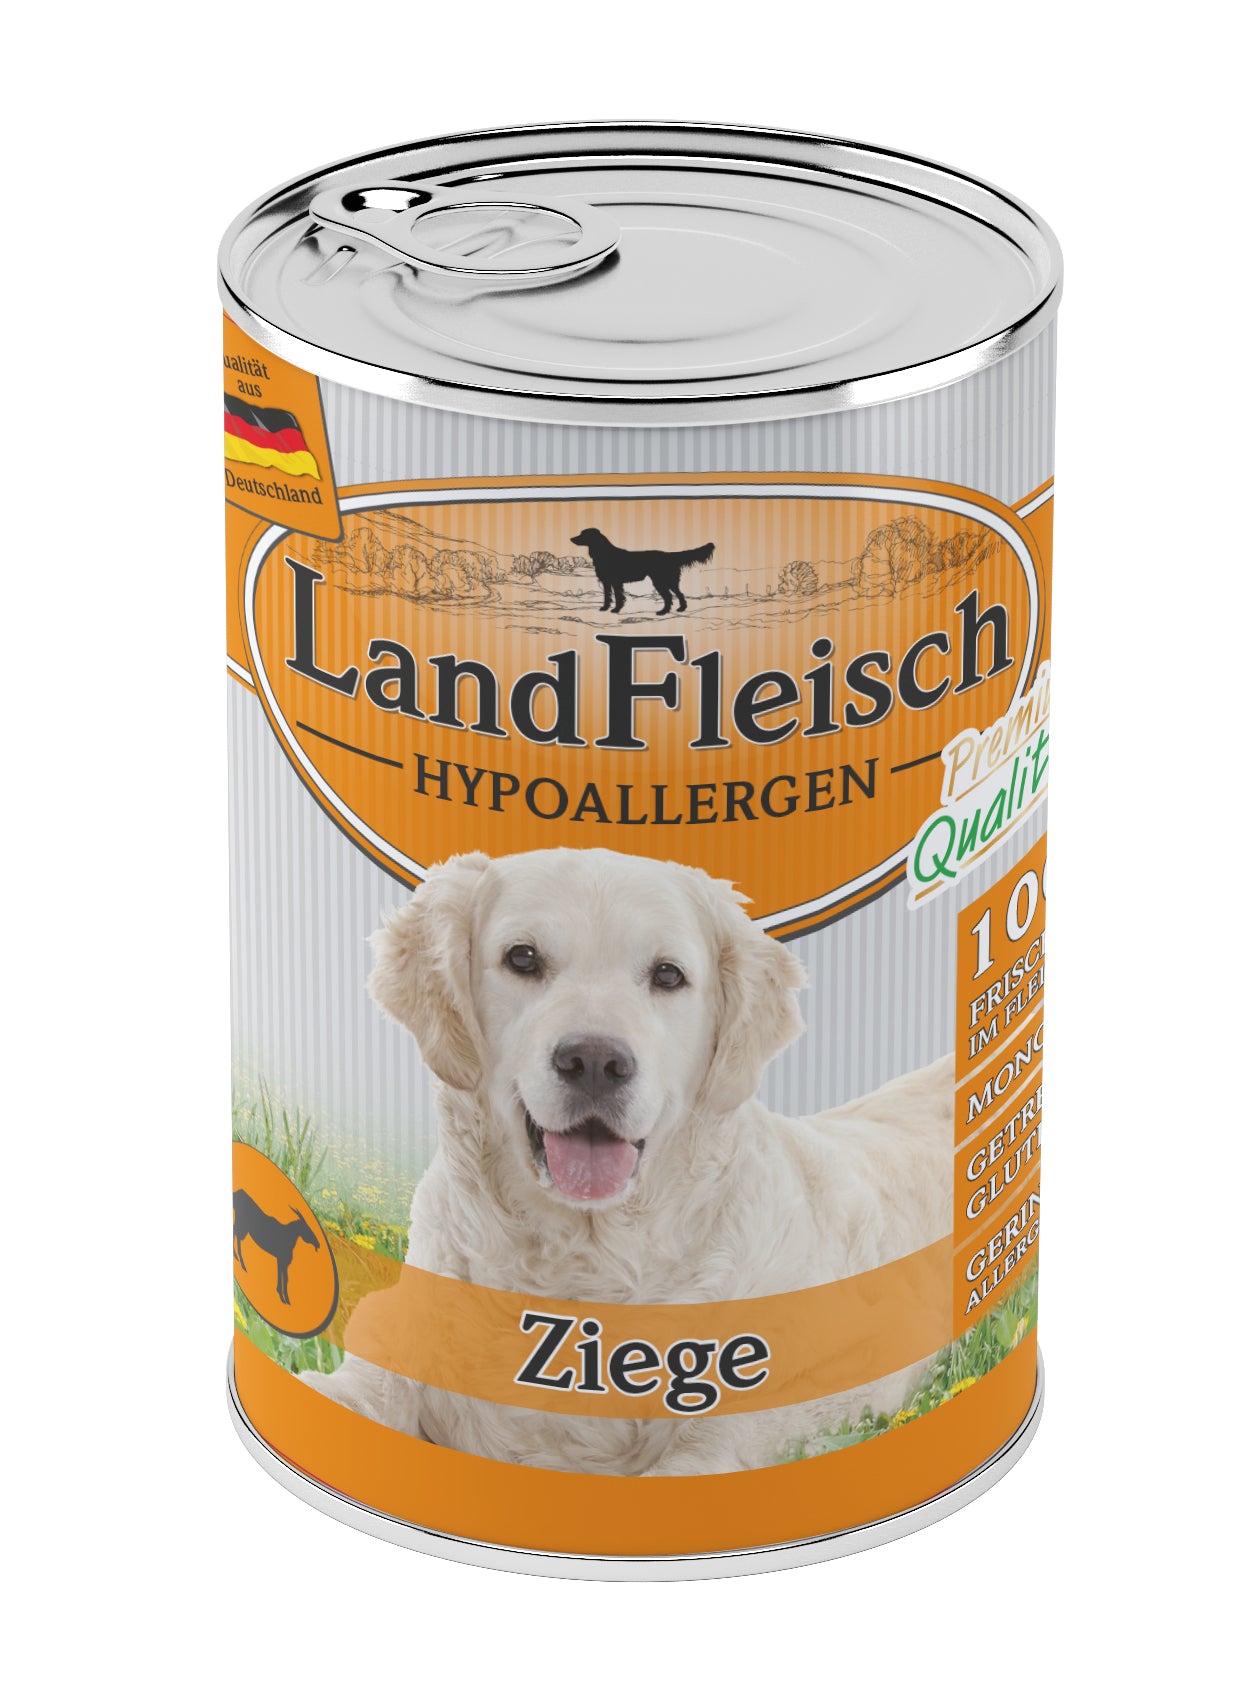 Artikel mit dem Namen LandFleisch Hypoallergen Ziege im Shop von zoo.de , dem Onlineshop für nachhaltiges Hundefutter und Katzenfutter.